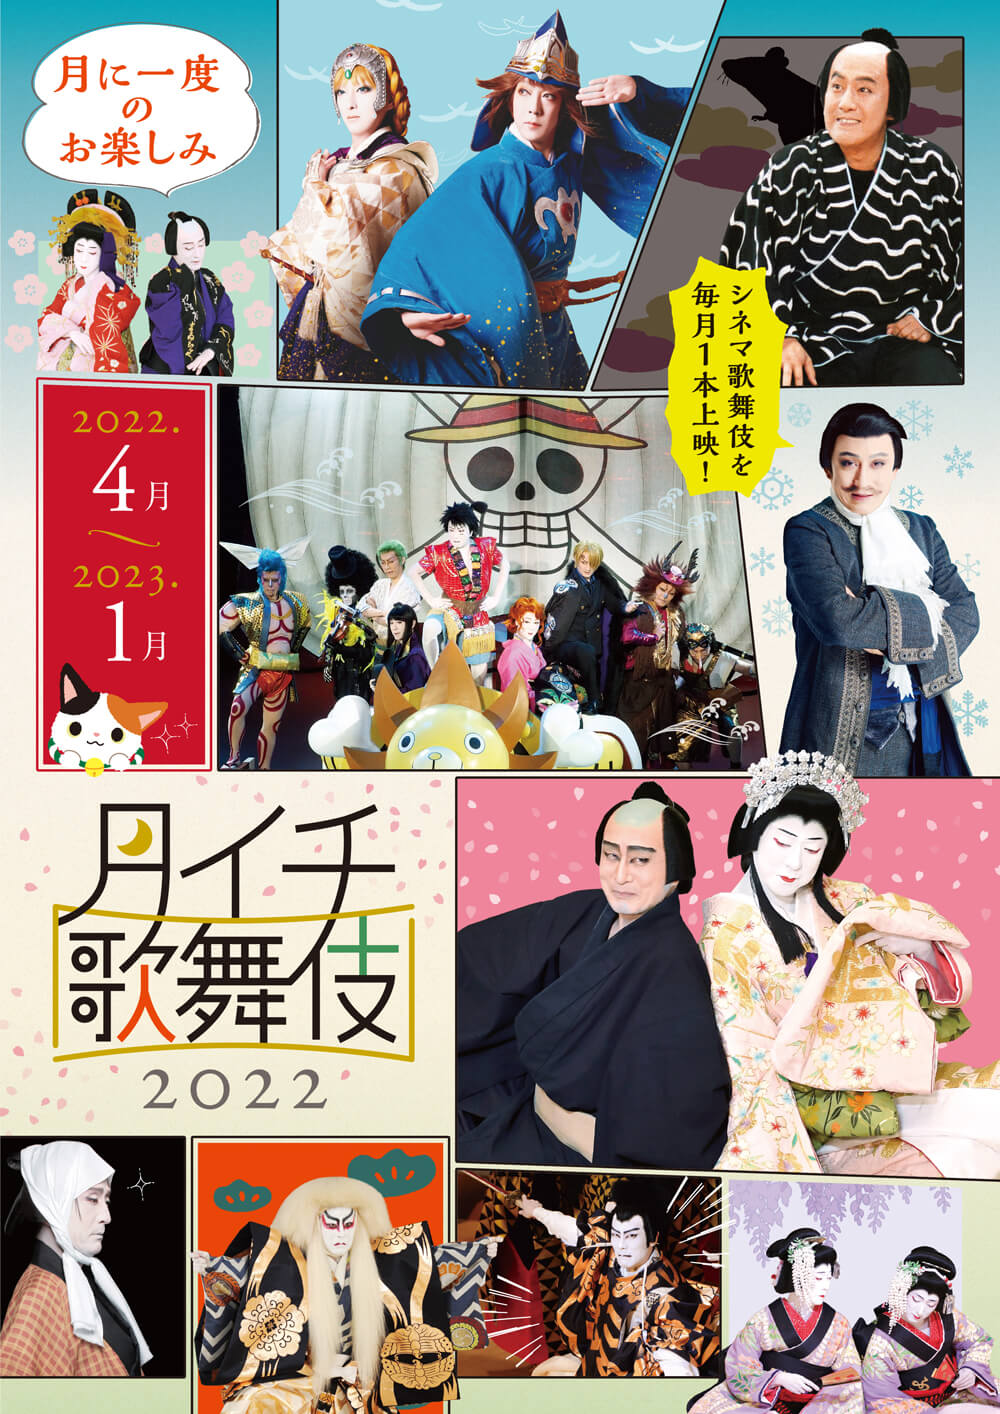 《月イチ歌舞伎》2022、上映ラインナップ発表